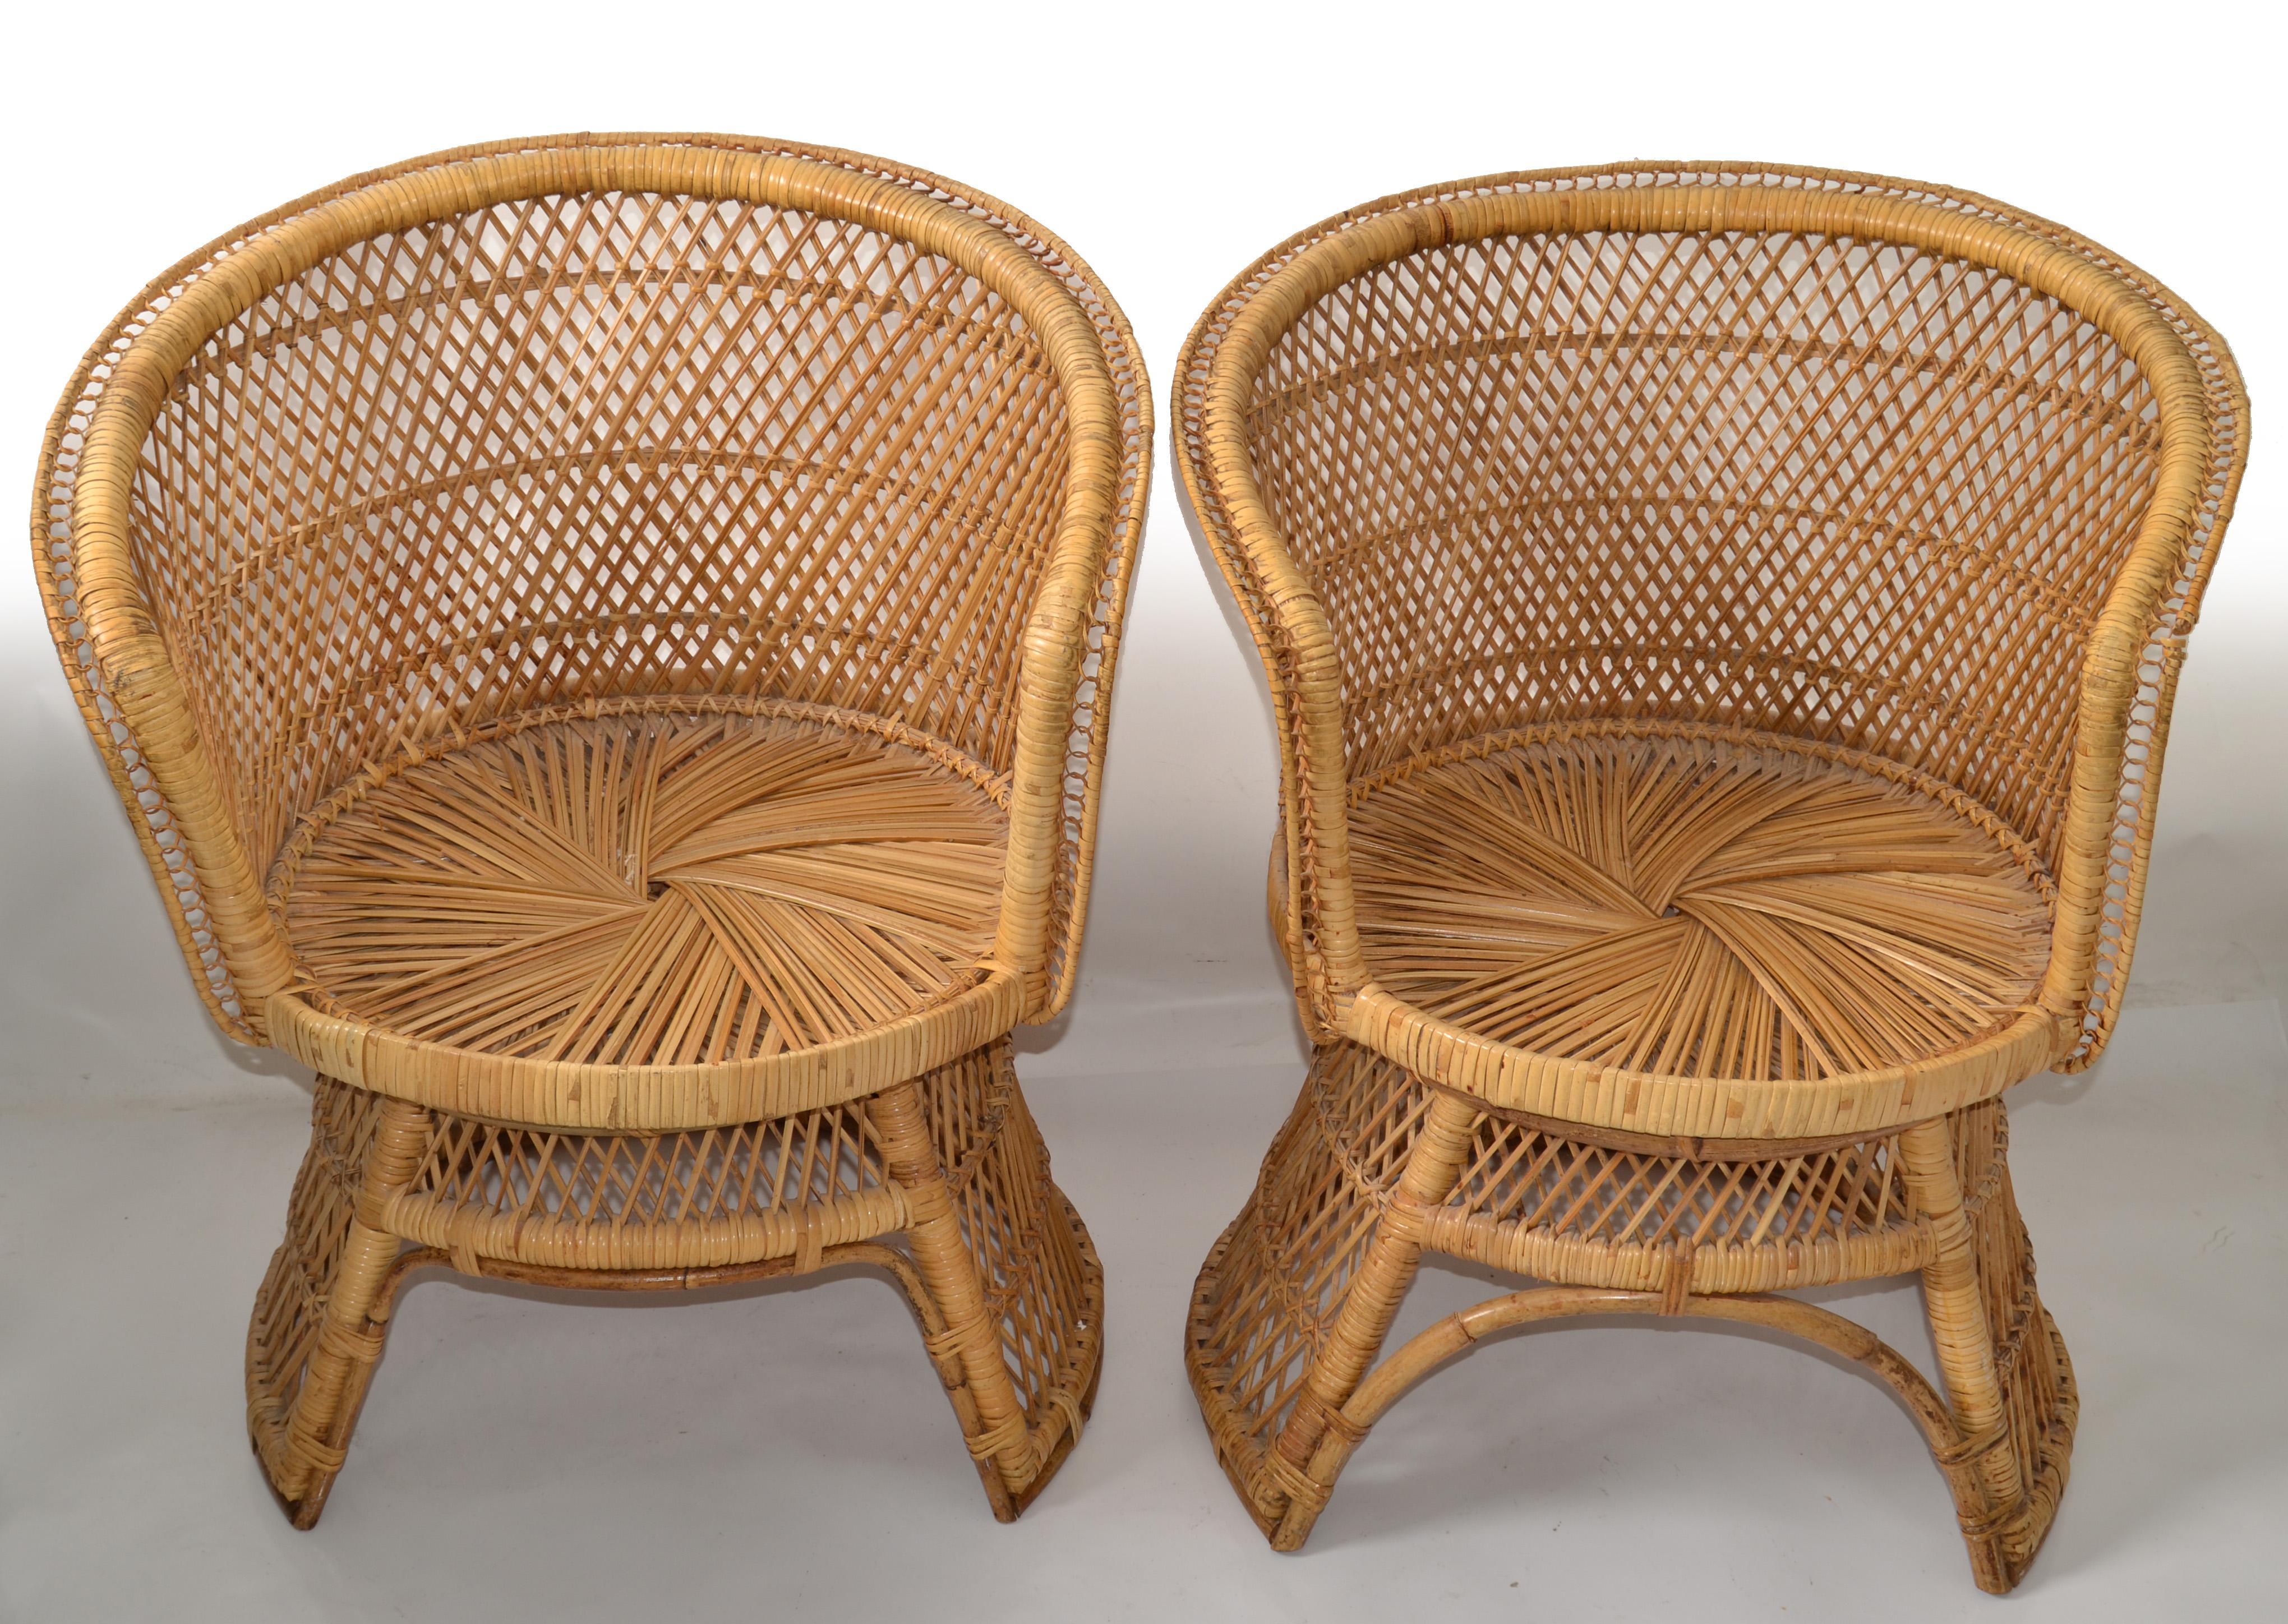 Philippin Ensemble de 2 fauteuils vintage en rotin et bambou de style chinoiserie tissés et fabriqués à la main en vente